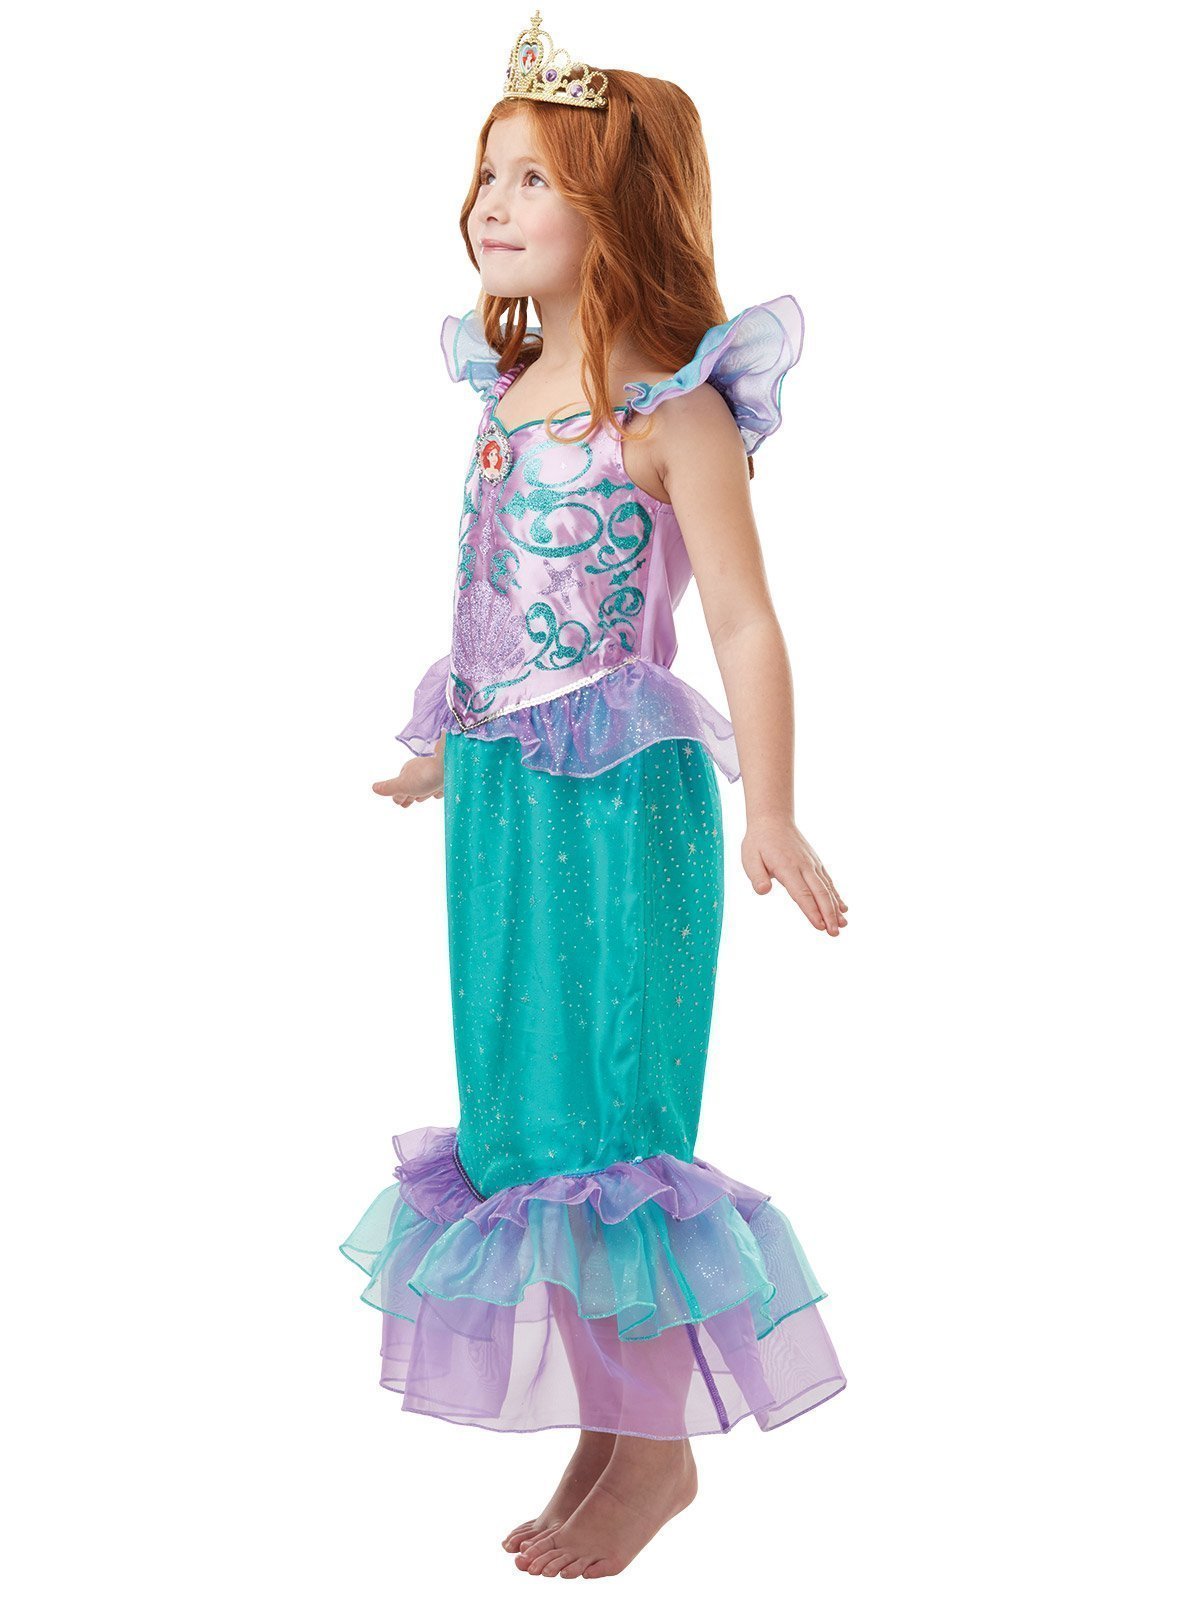 Rubies - Déguisement Ariel Princesse Disney Glitter & Sparkle - Taille 104  (3-4 ans)